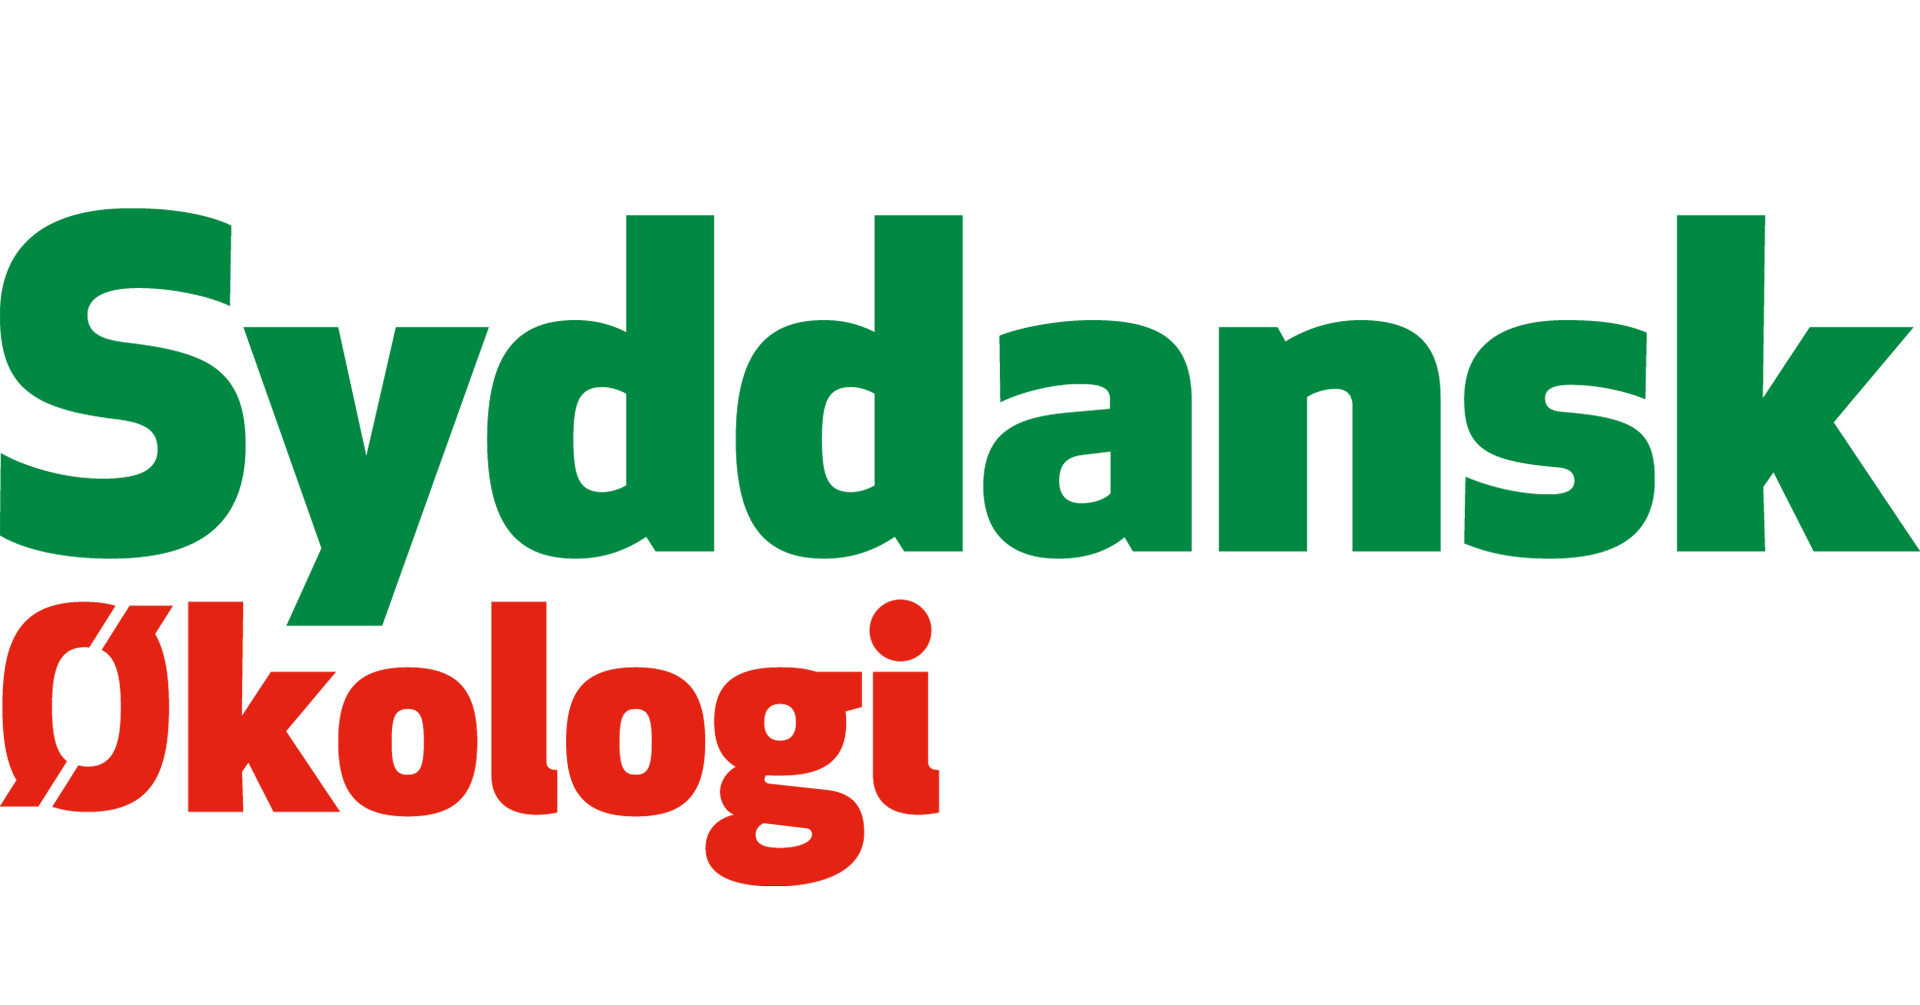 Syddansk Økologi